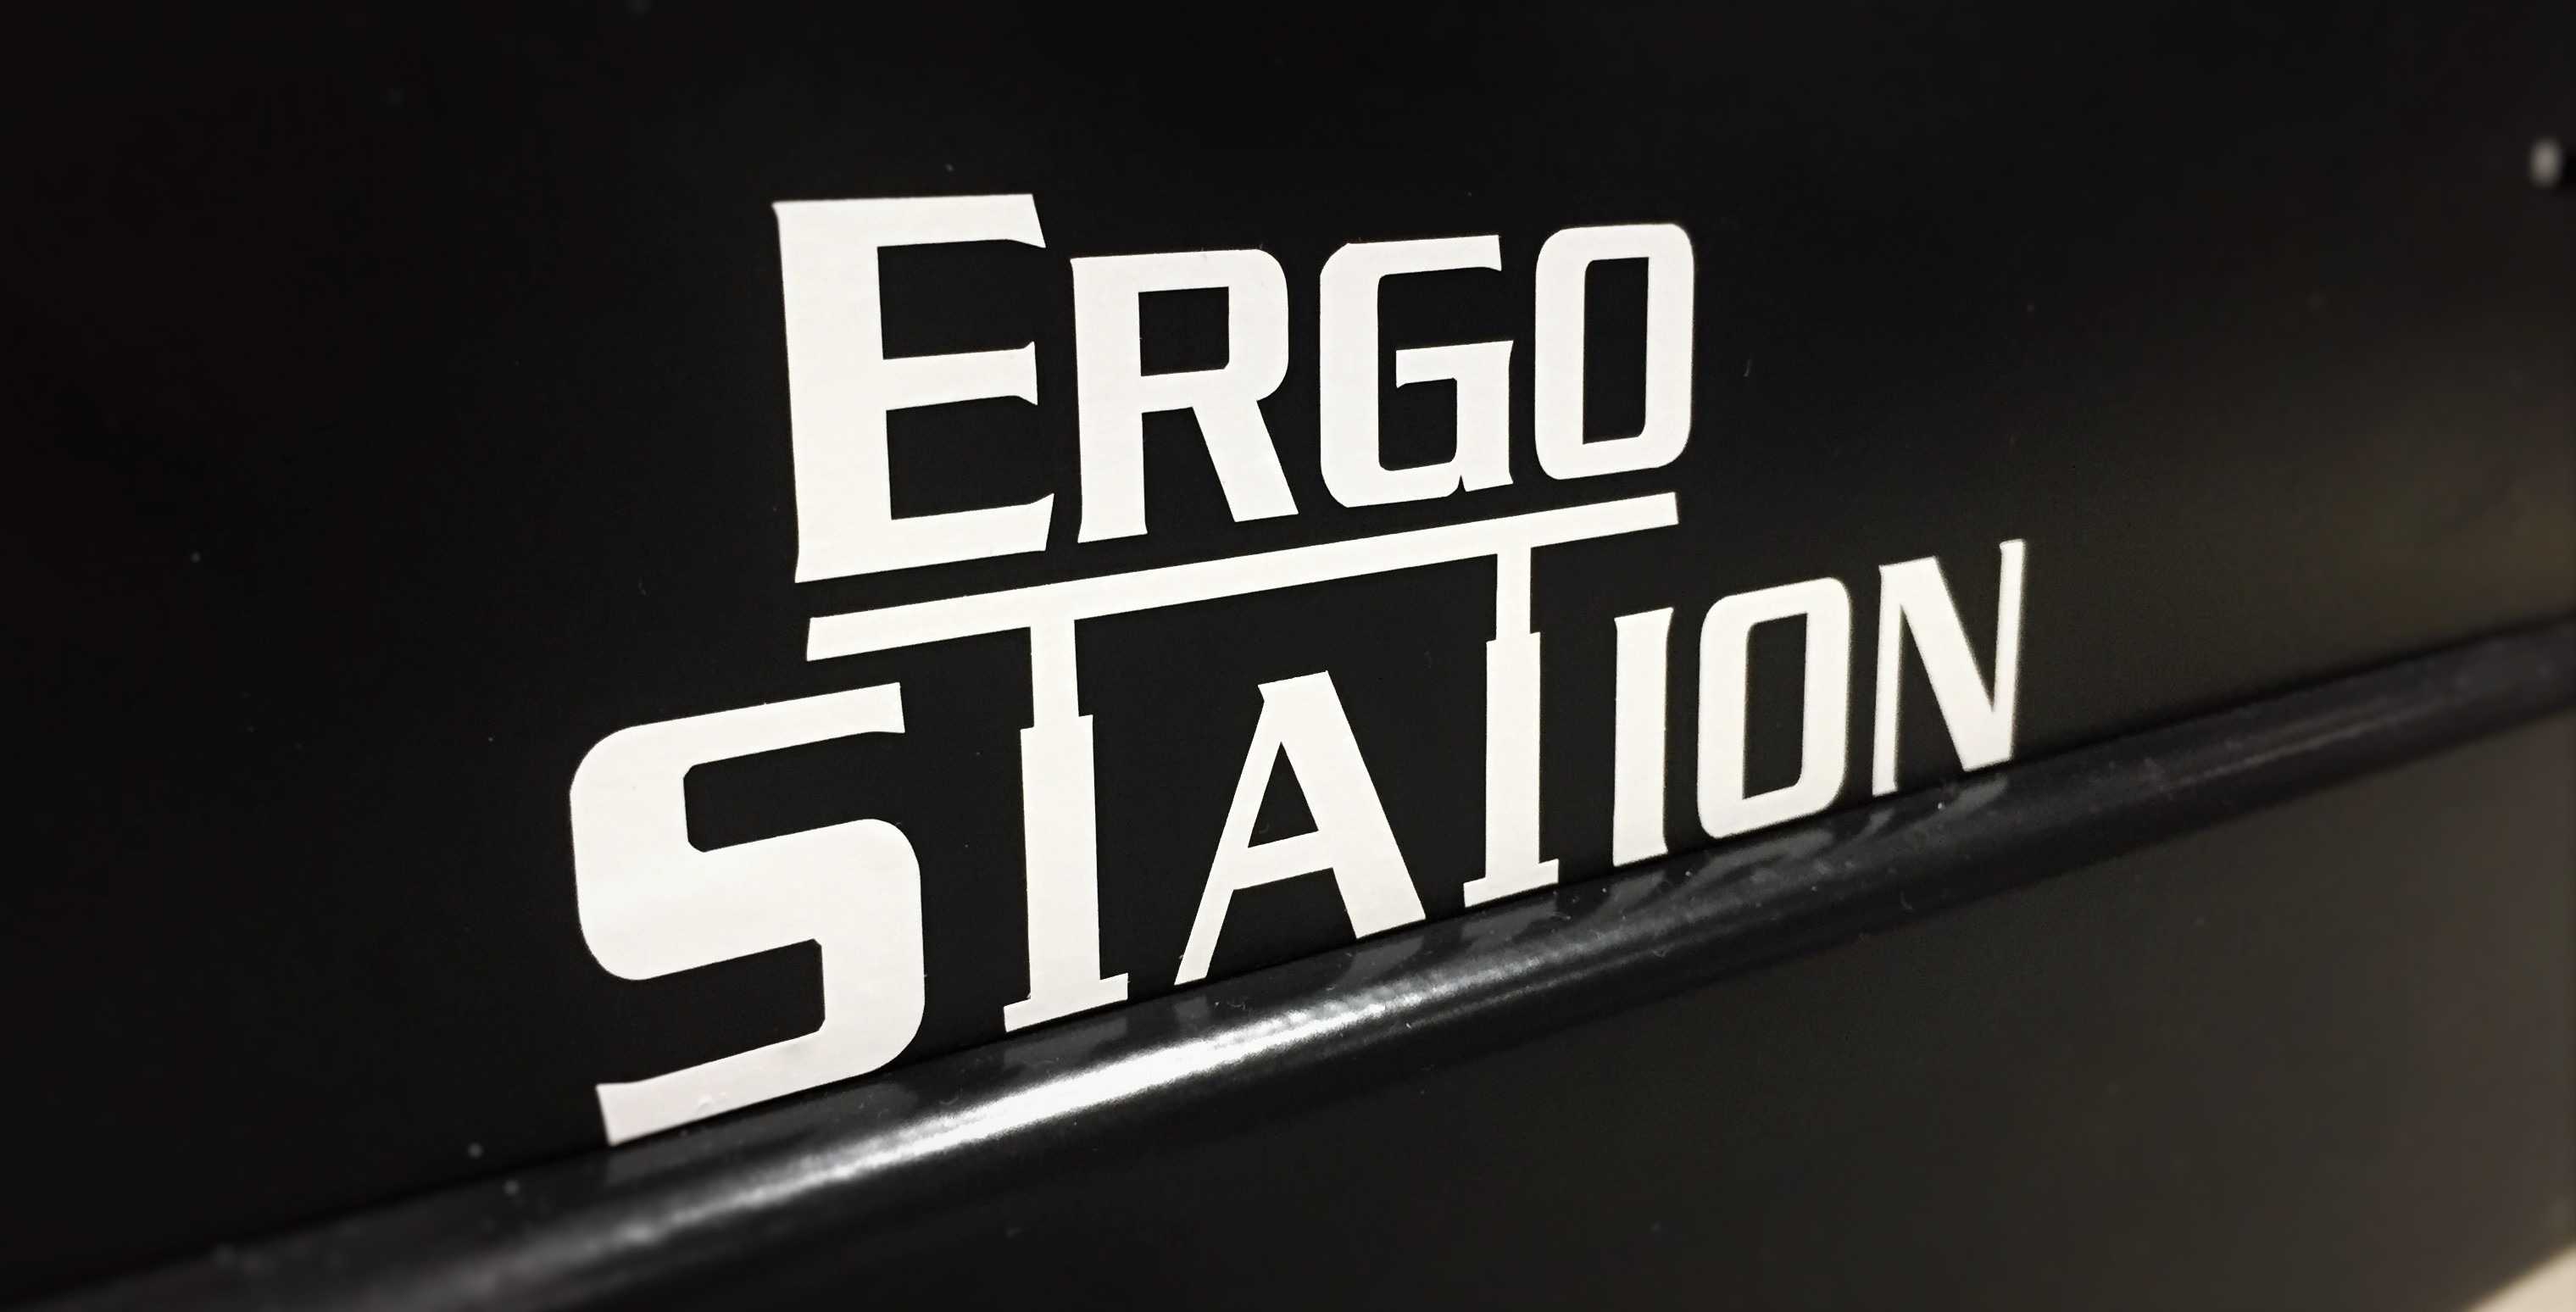 Extol, Inc. Announces Divestiture of ErgoStation Product Line